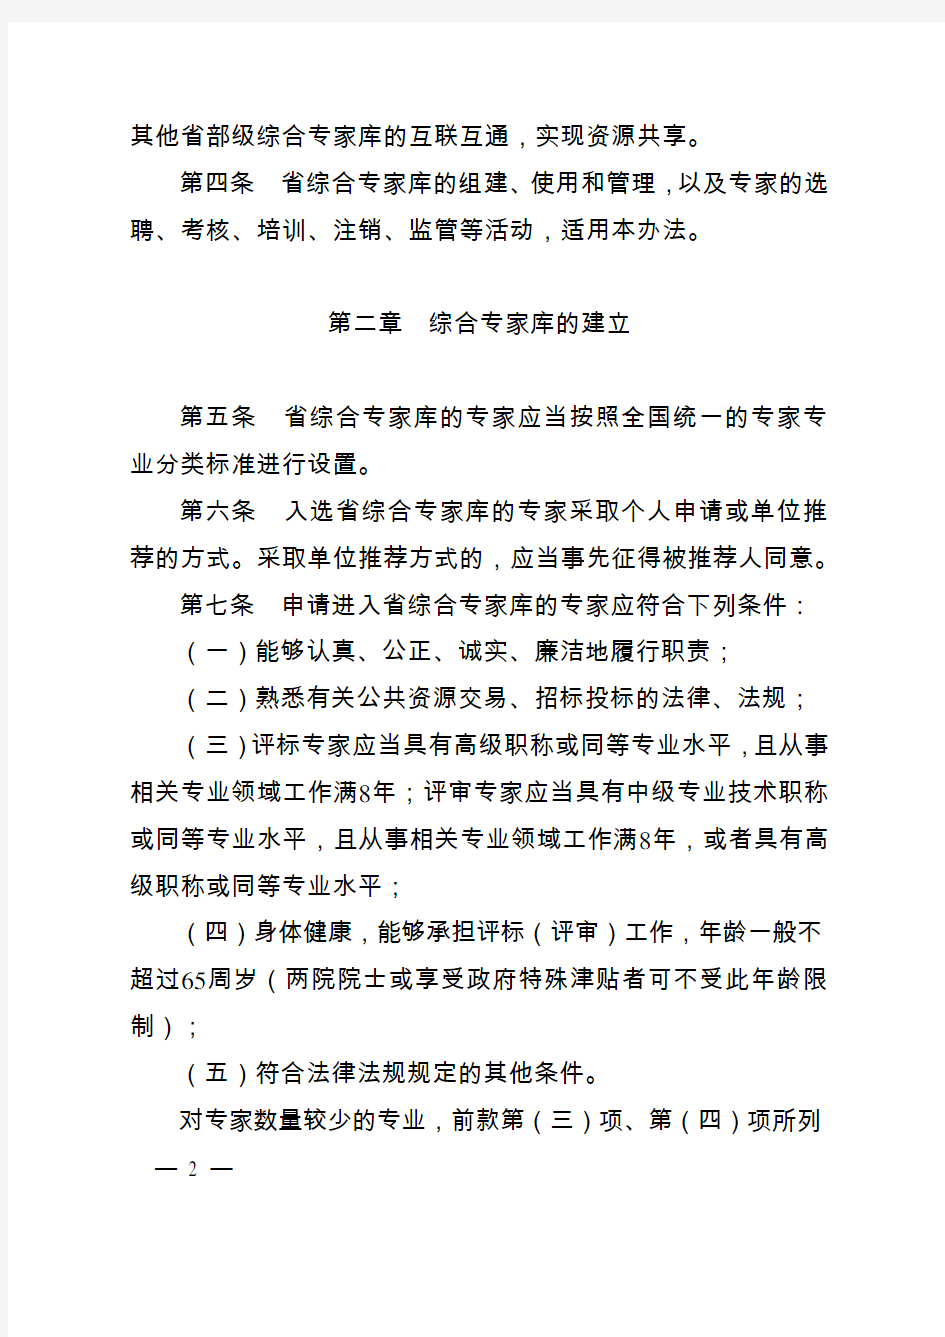 江苏省综合评标(评审)专家库和专家管理暂行办法